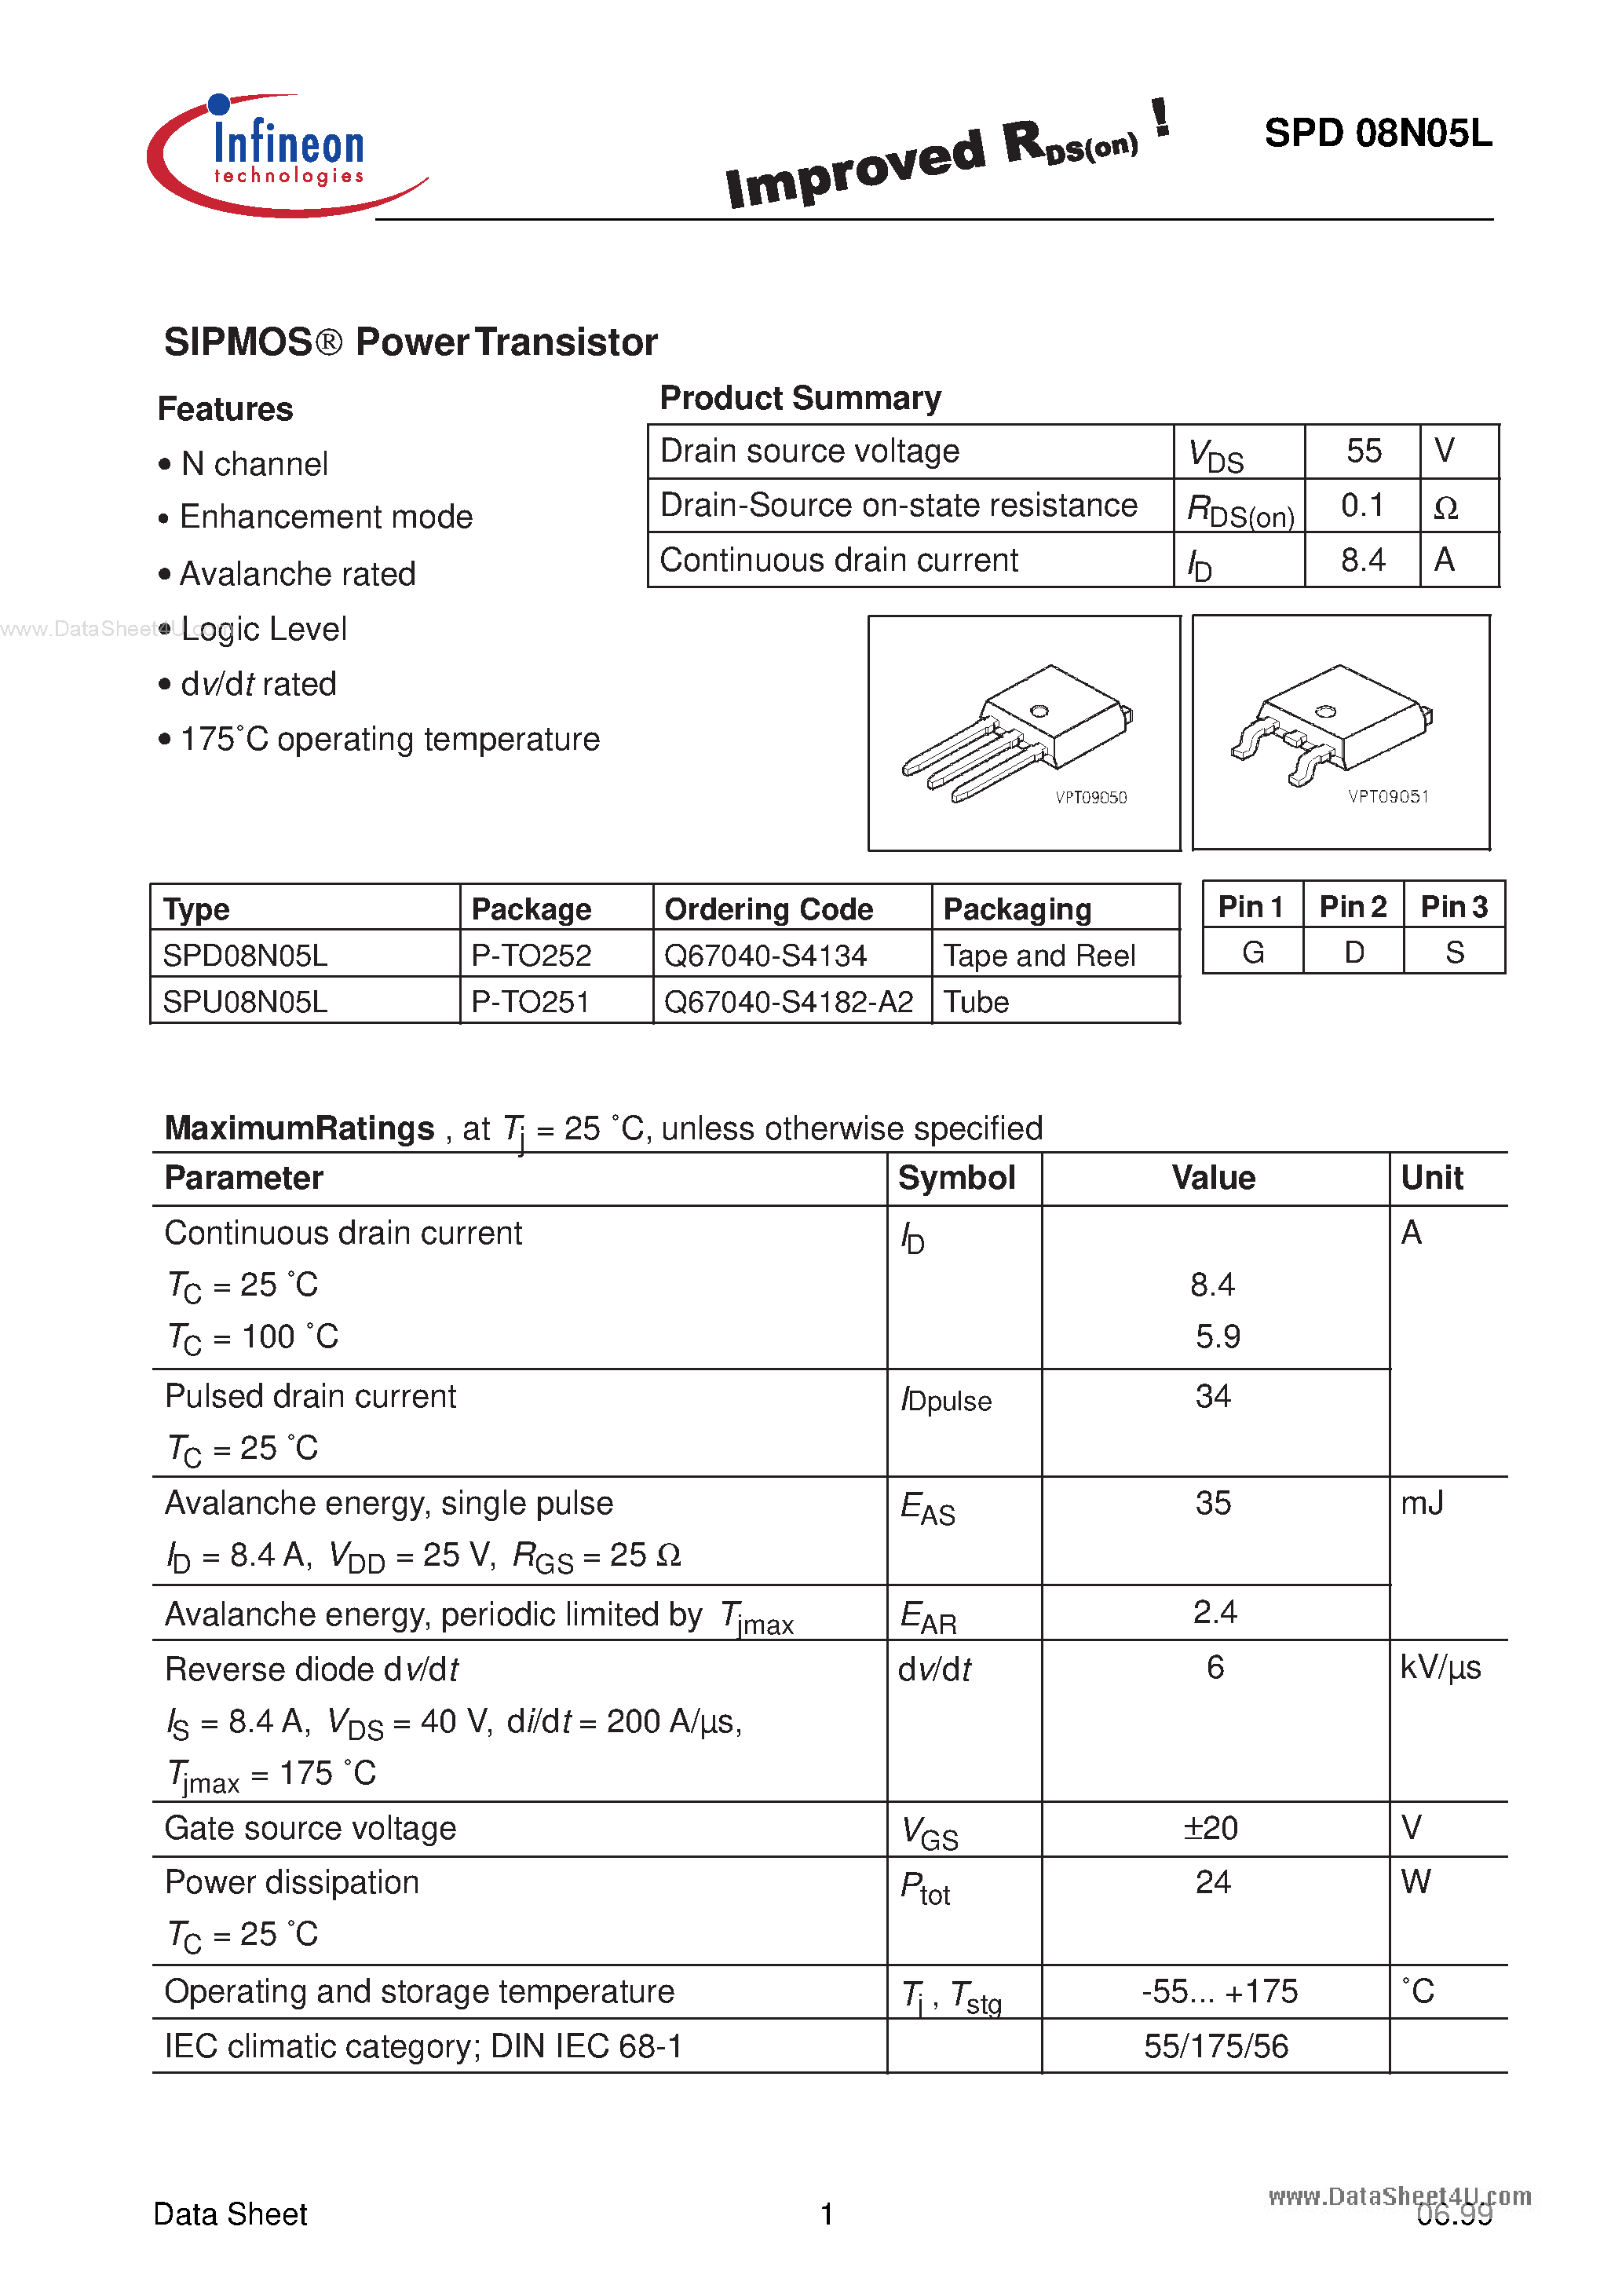 Datasheet SPU08N05L - SIPMOS-R POWER TRANSISTOR page 1